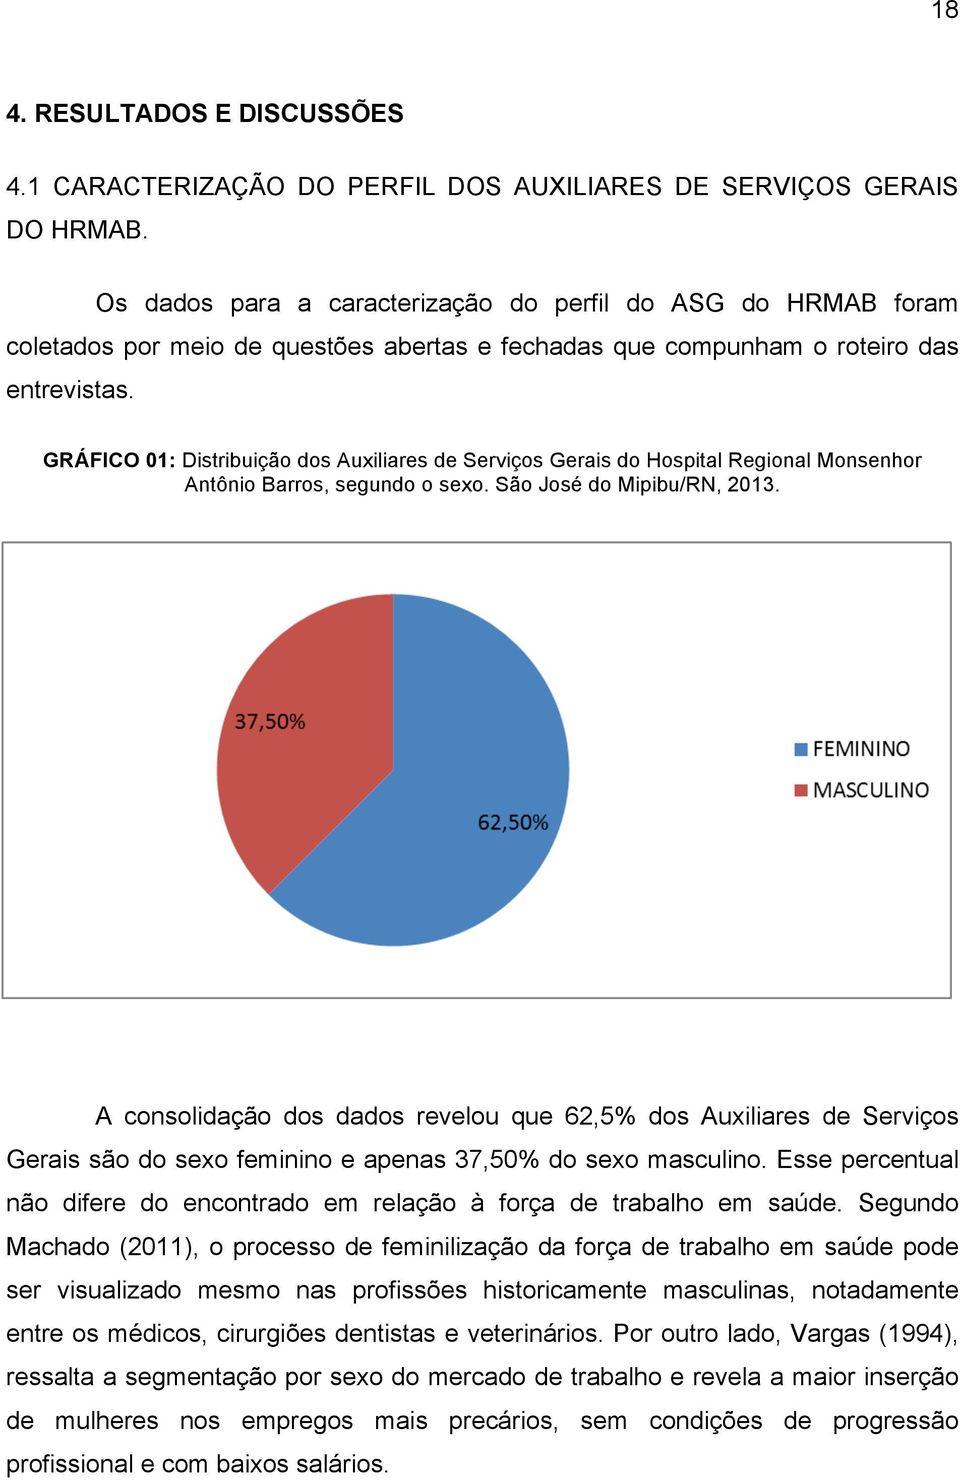 GRÁFICO 01: Distribuição dos Auxiliares de Serviços Gerais do Hospital Regional Monsenhor Antônio Barros, segundo o sexo. São José do Mipibu/RN, 2013.